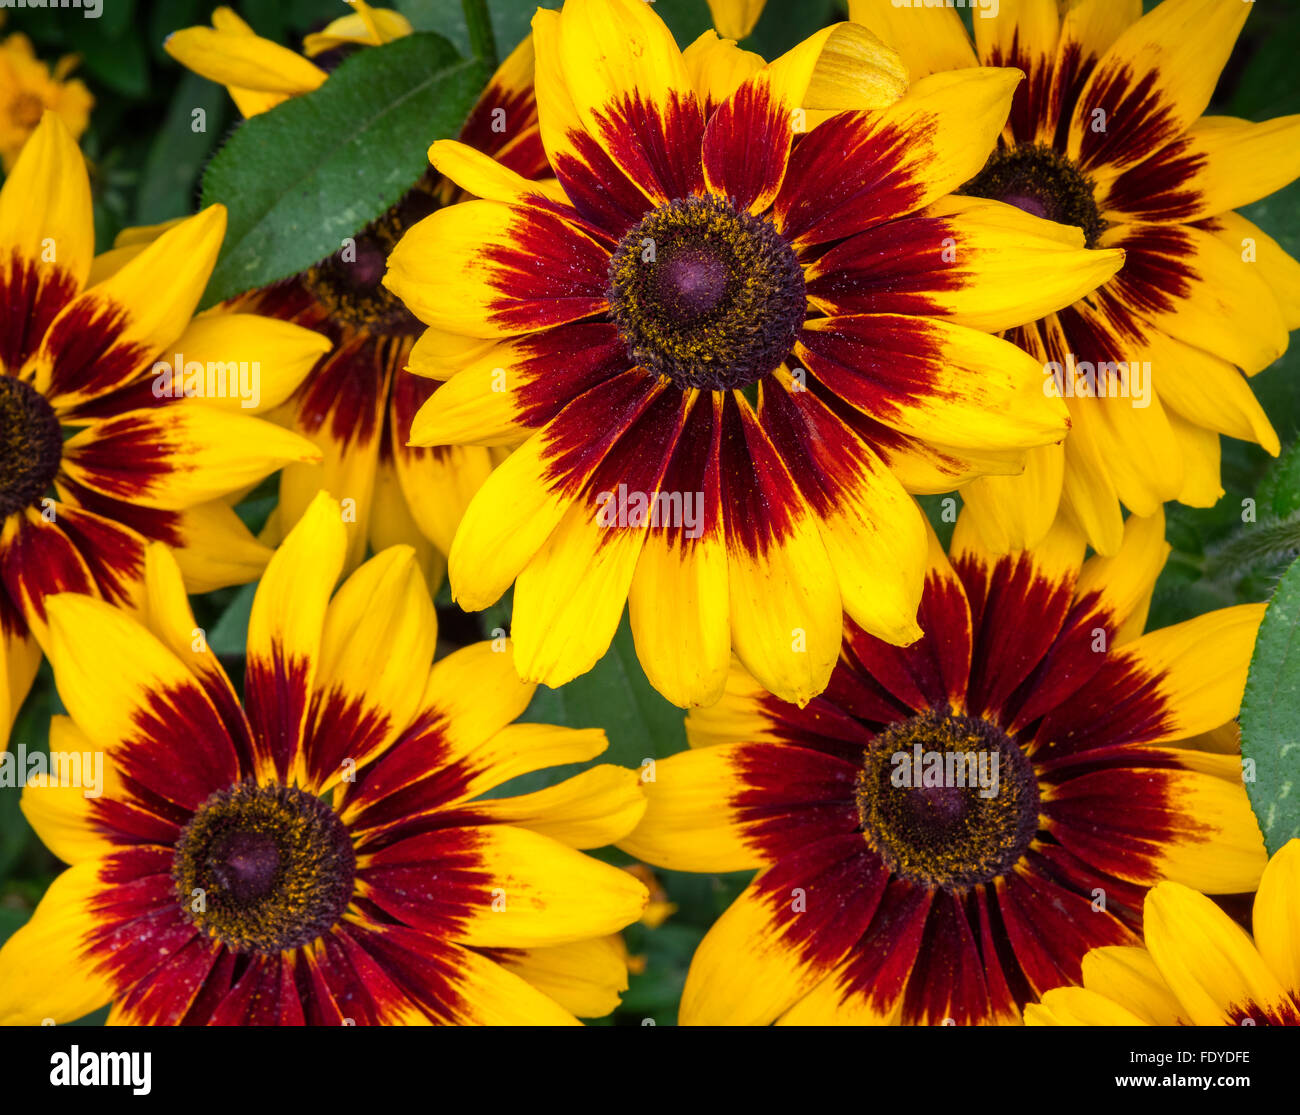 Rudbeckia hirta ‘Denver Daisy' - Gloriosa daisy Stock Photo